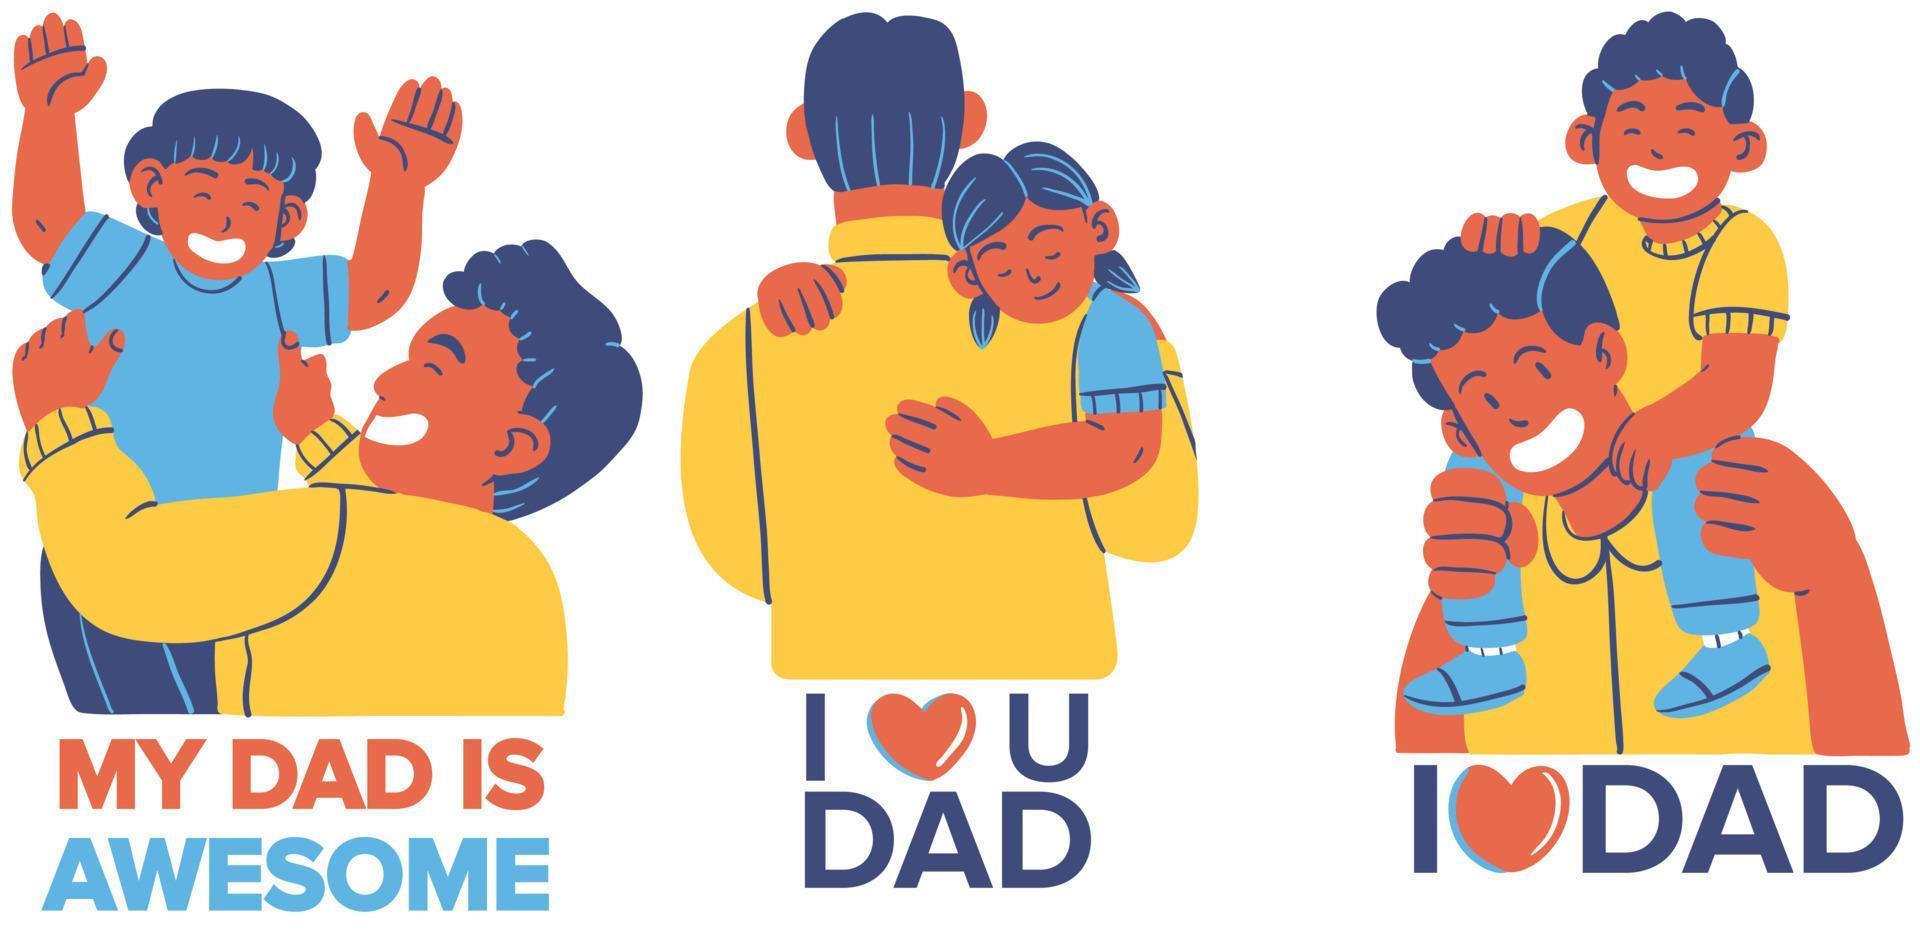 Vektor Illustration von ein Vater und Sohn umarmen jeder andere. Vaters Tag.